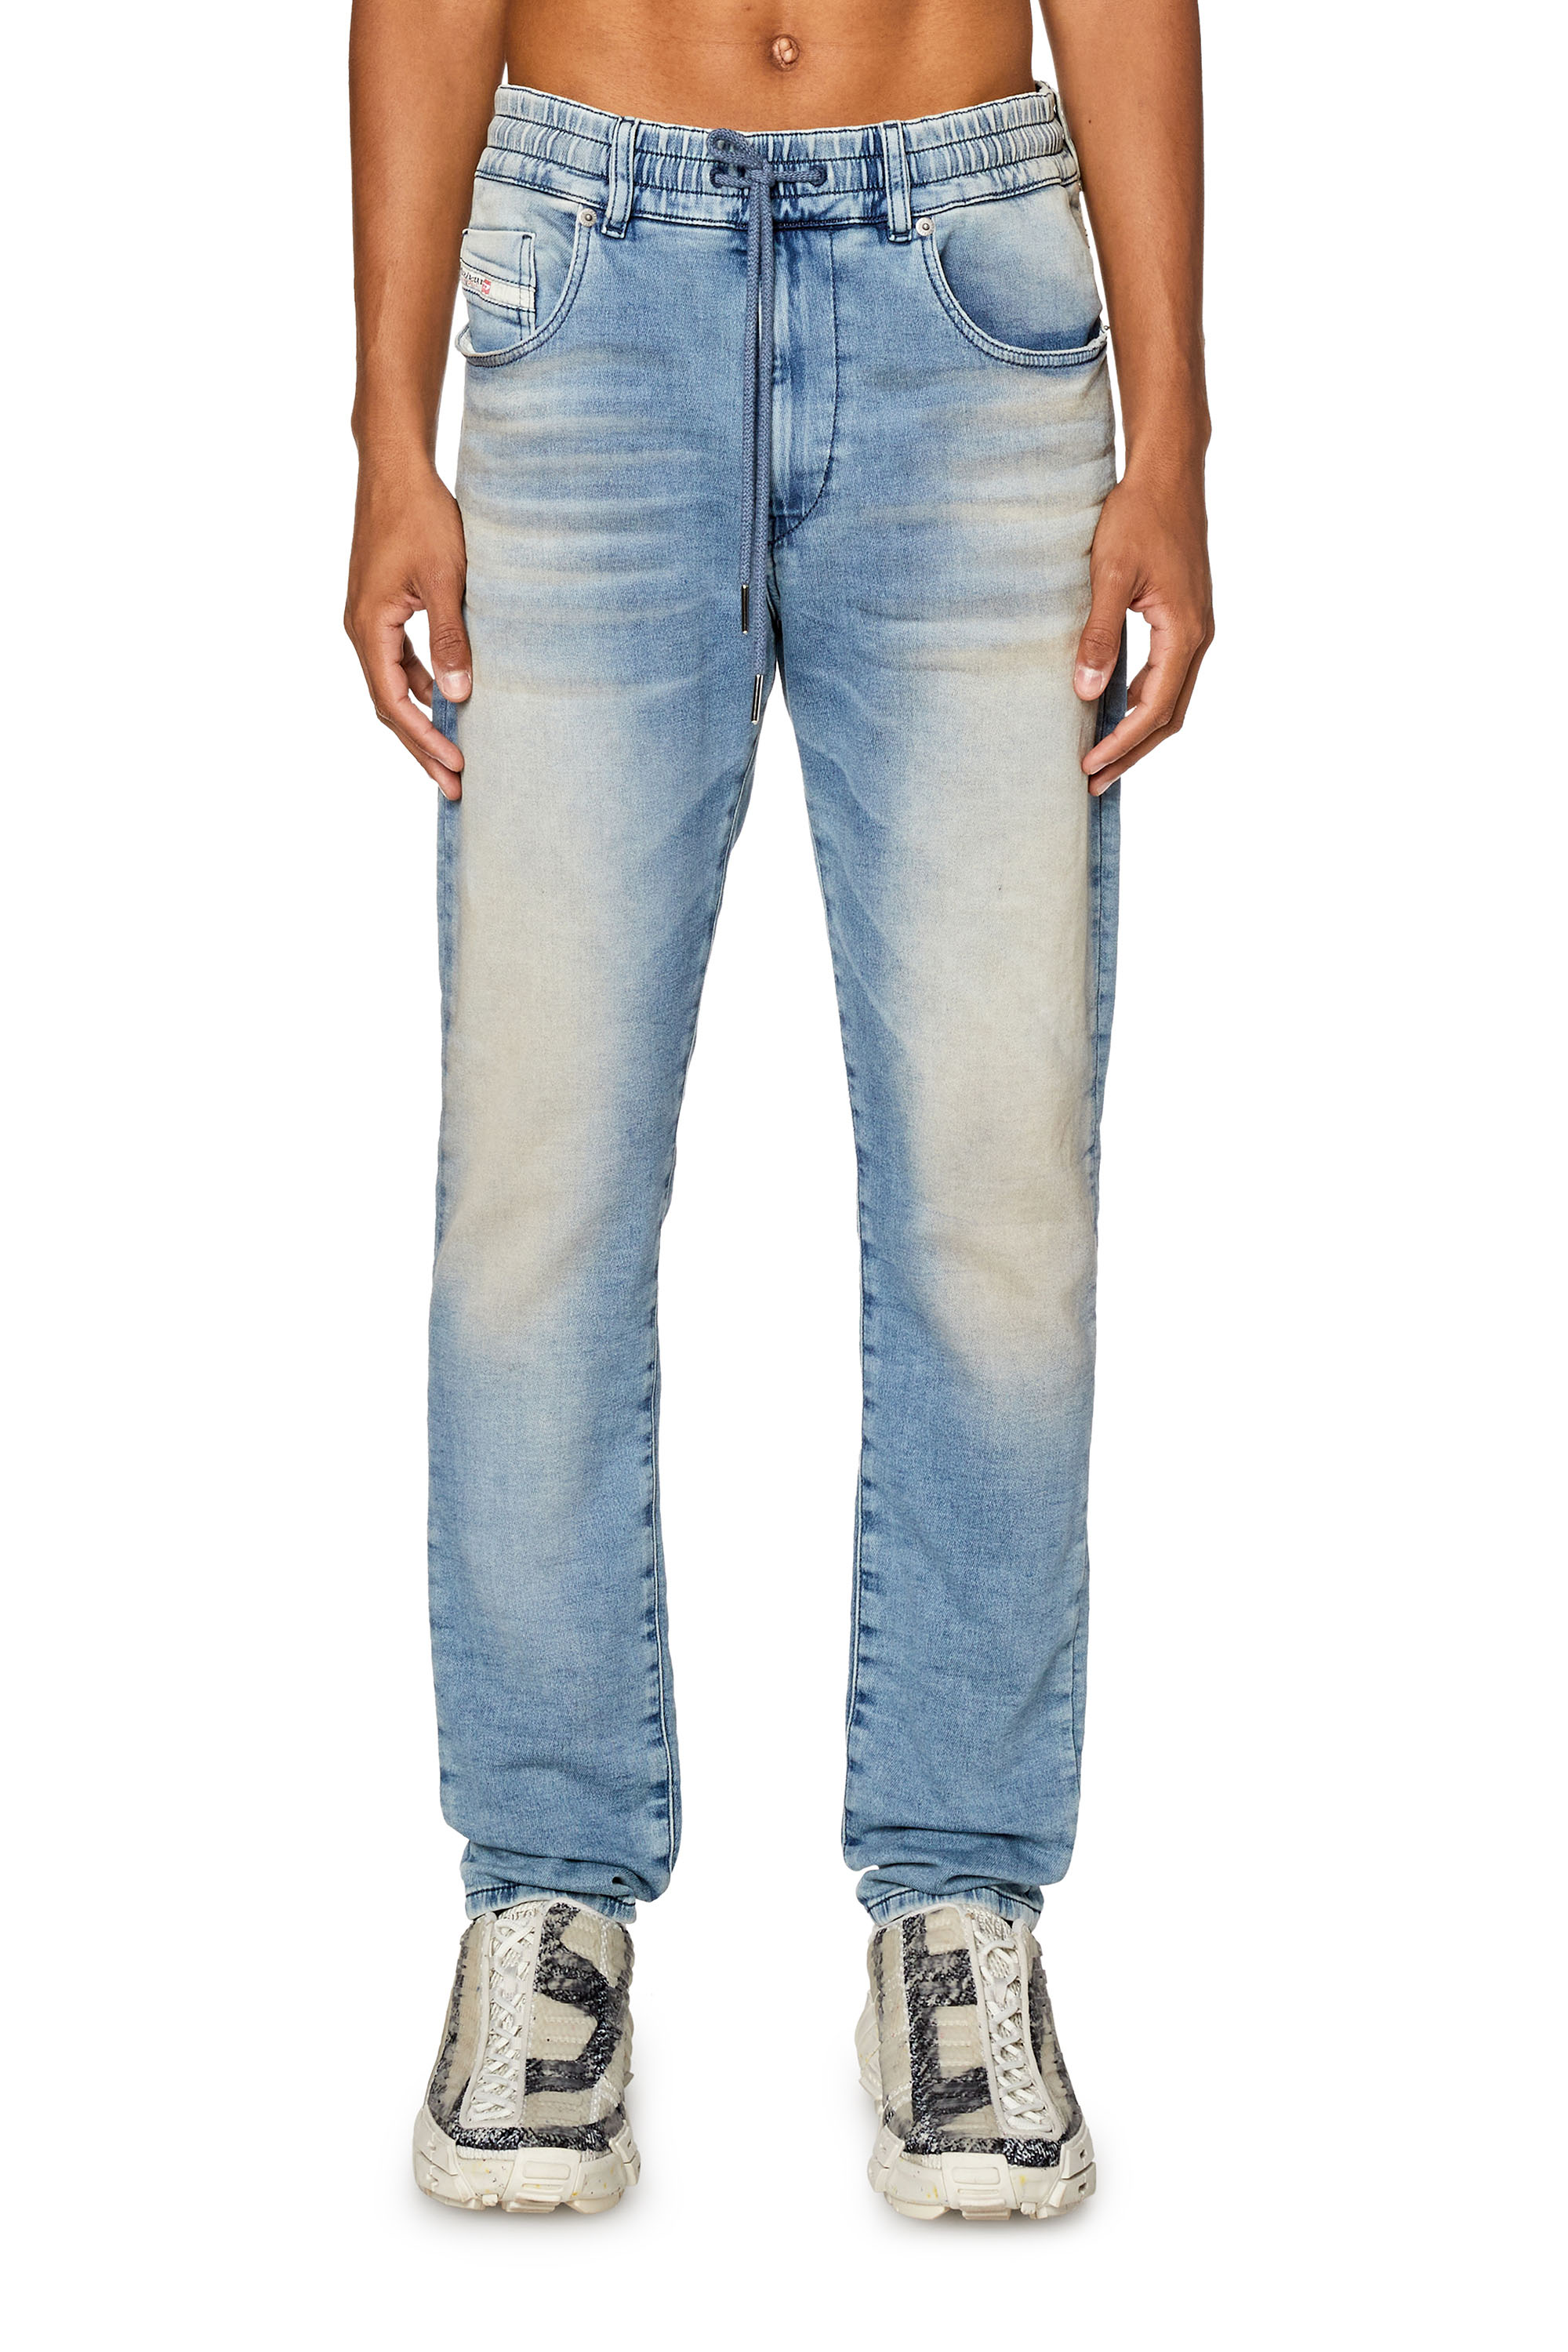 Men's Slim Jeans | Light blue | Diesel 2060 D-Strukt Joggjeans®